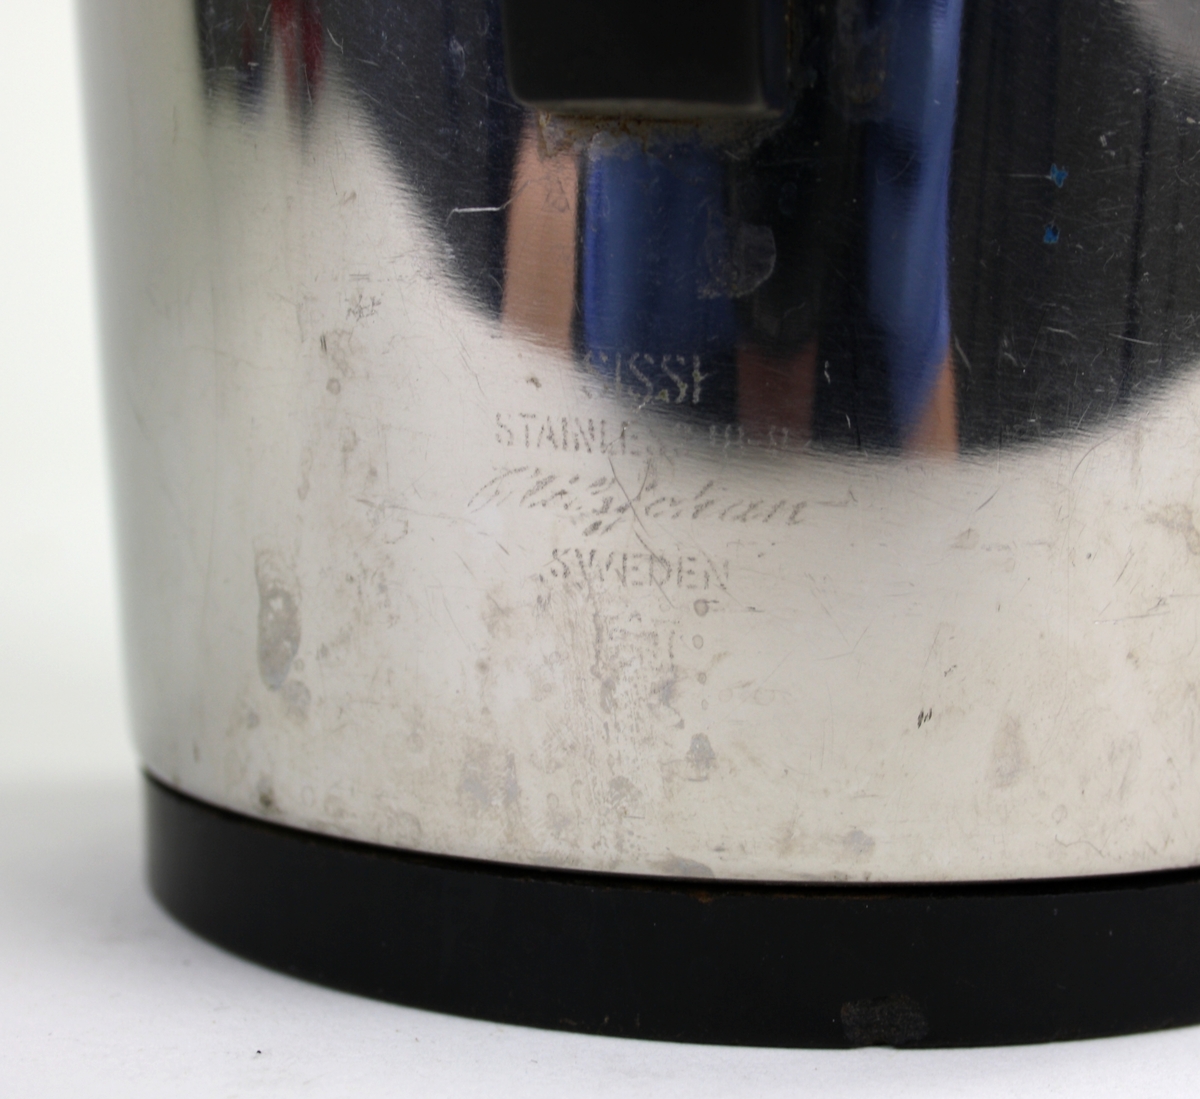 Termos kaffekanna, Sissi rostfritt stål tillverkad av Nils Johan. Bottenplatta i svart plast samt handtag och knopp i samma material.